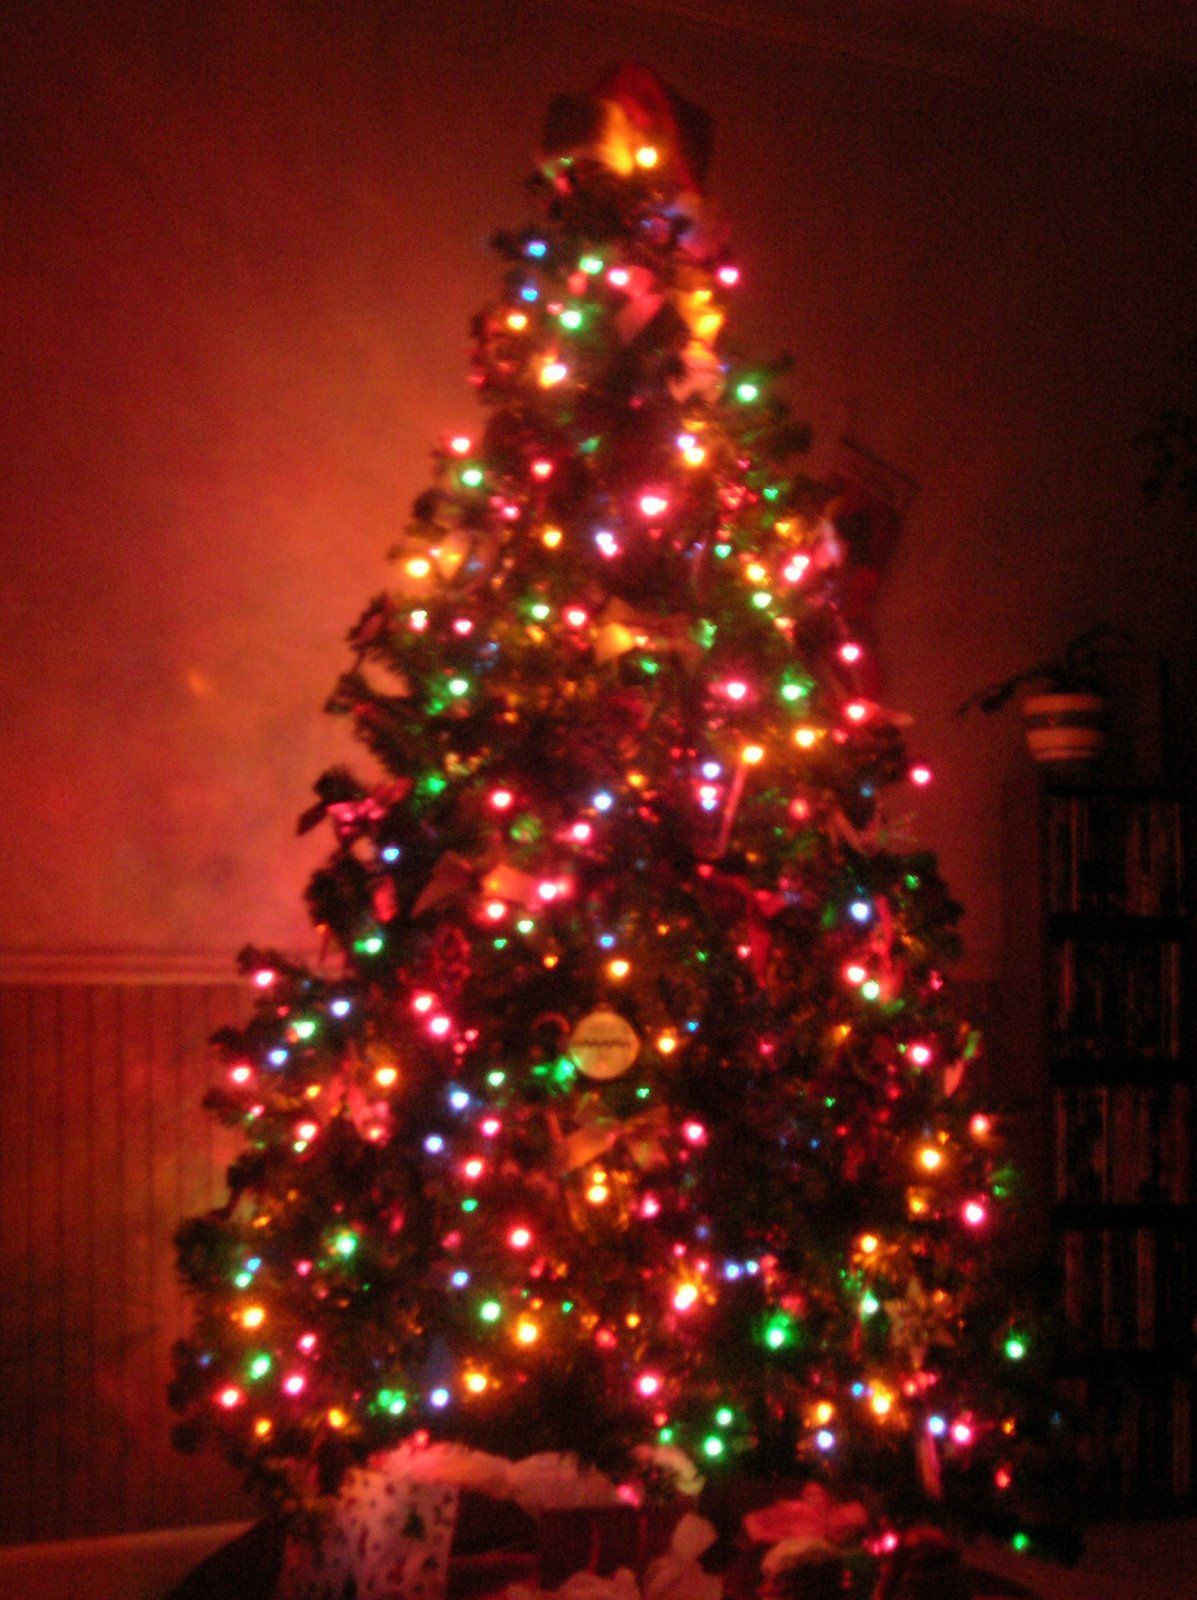 Christmas Tree Pics 01. Christmas tree image, Christmas tree picture, Christmas lights